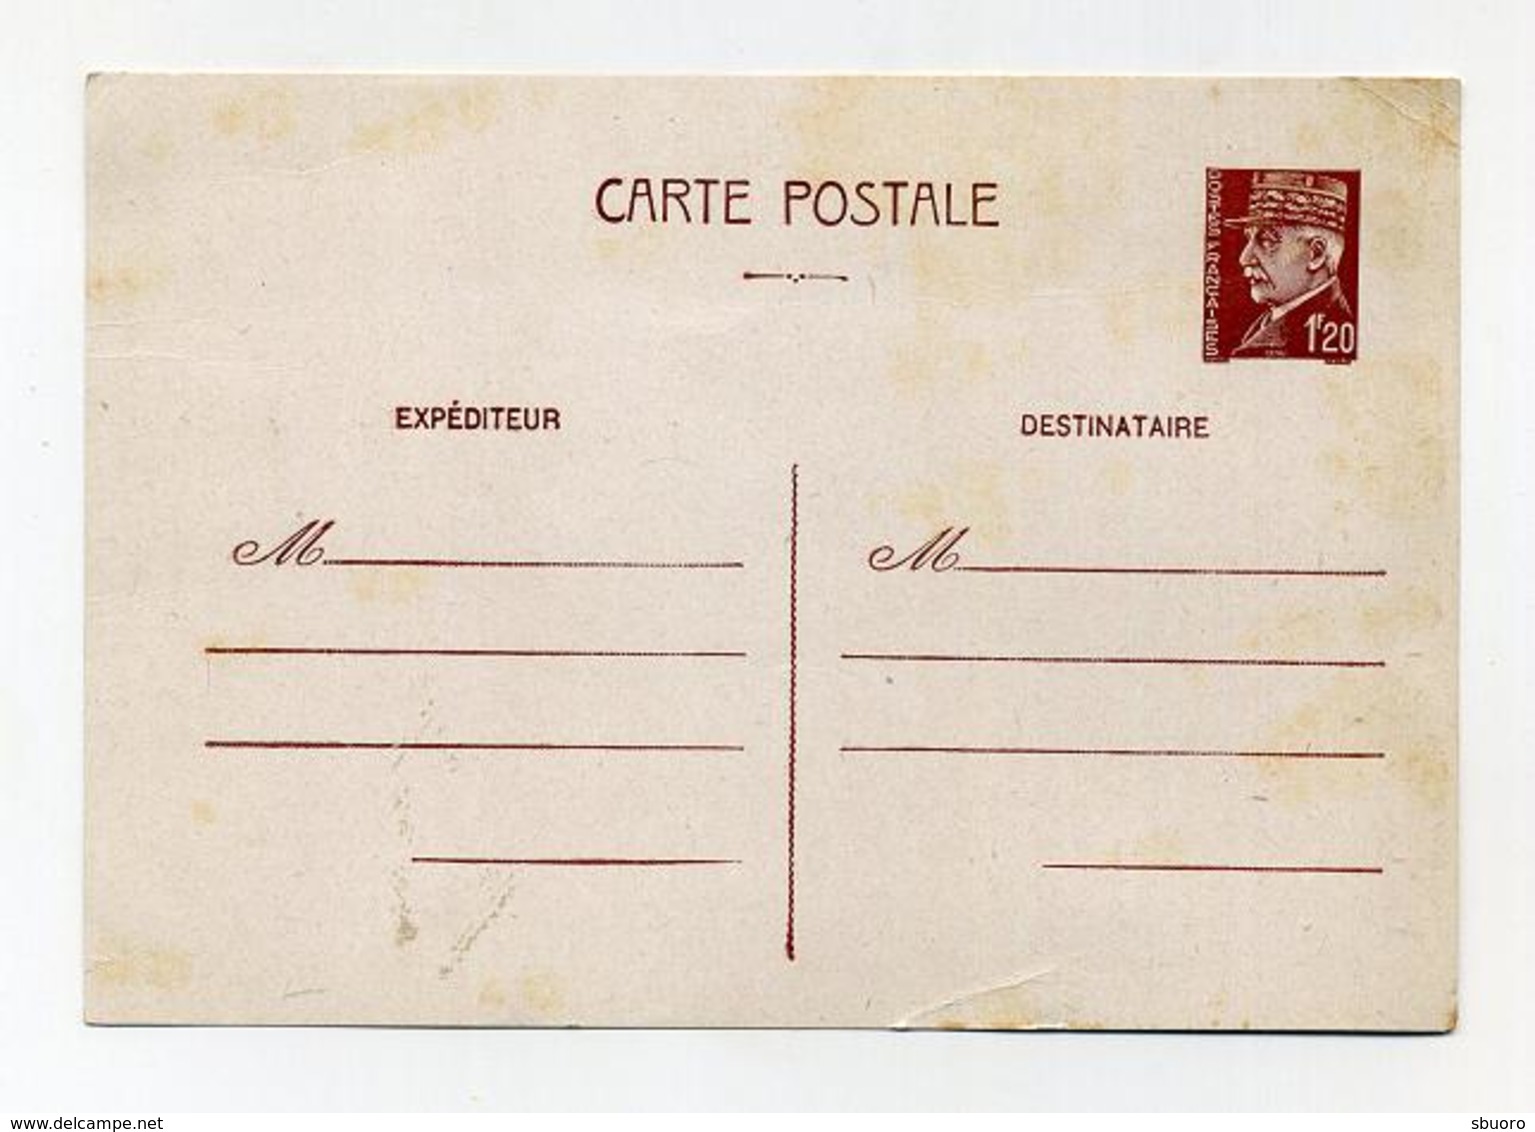 Carte Postale Pré-affranchie Neuve (timbre Imprimé) Maréchal Pétain 1F20 - AK Mit Aufdruck (vor 1995)